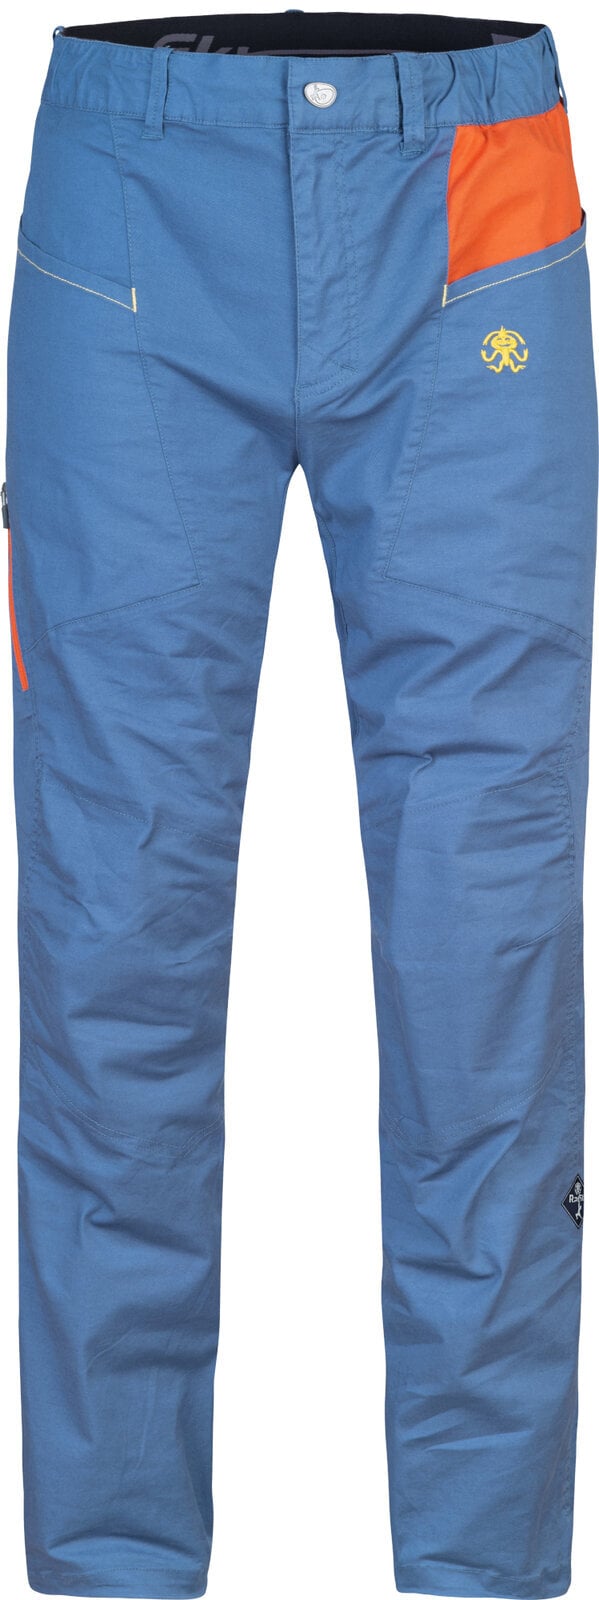 Pantalons outdoor Rafiki Crag Man Pants Ensign Blue/Clay XL Pantalons outdoor